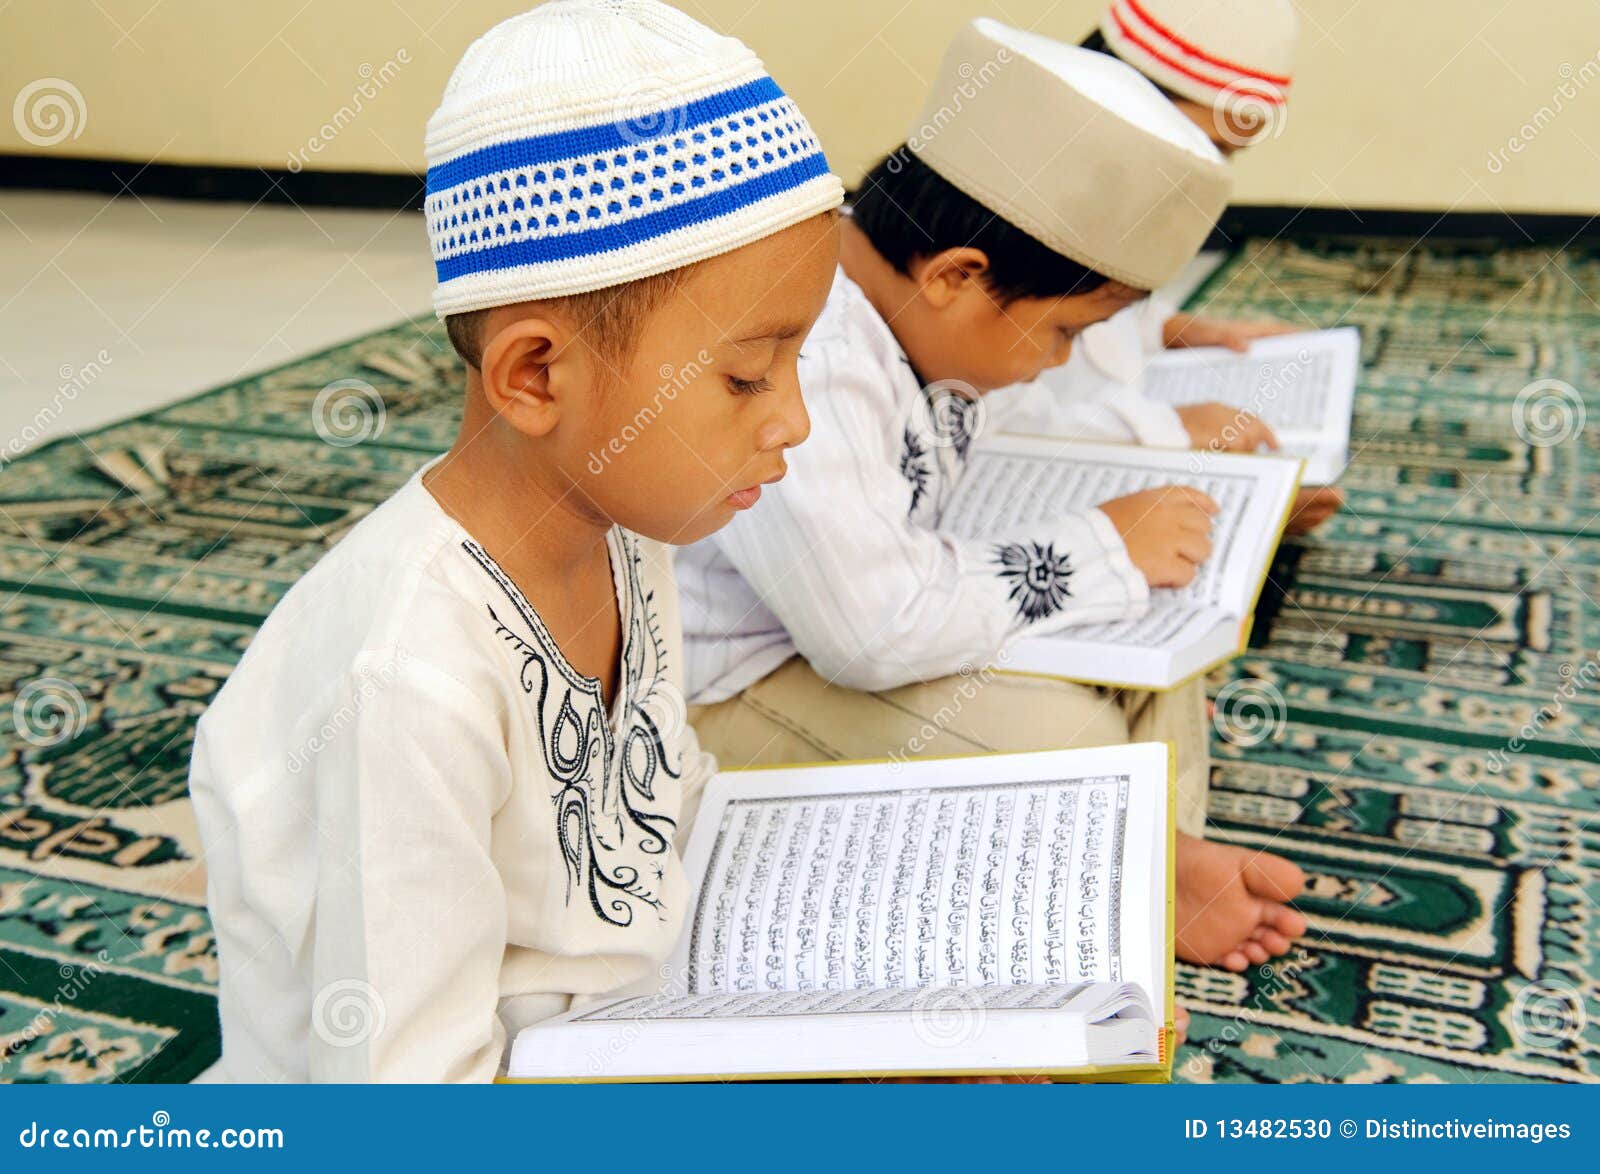 kids reading koran